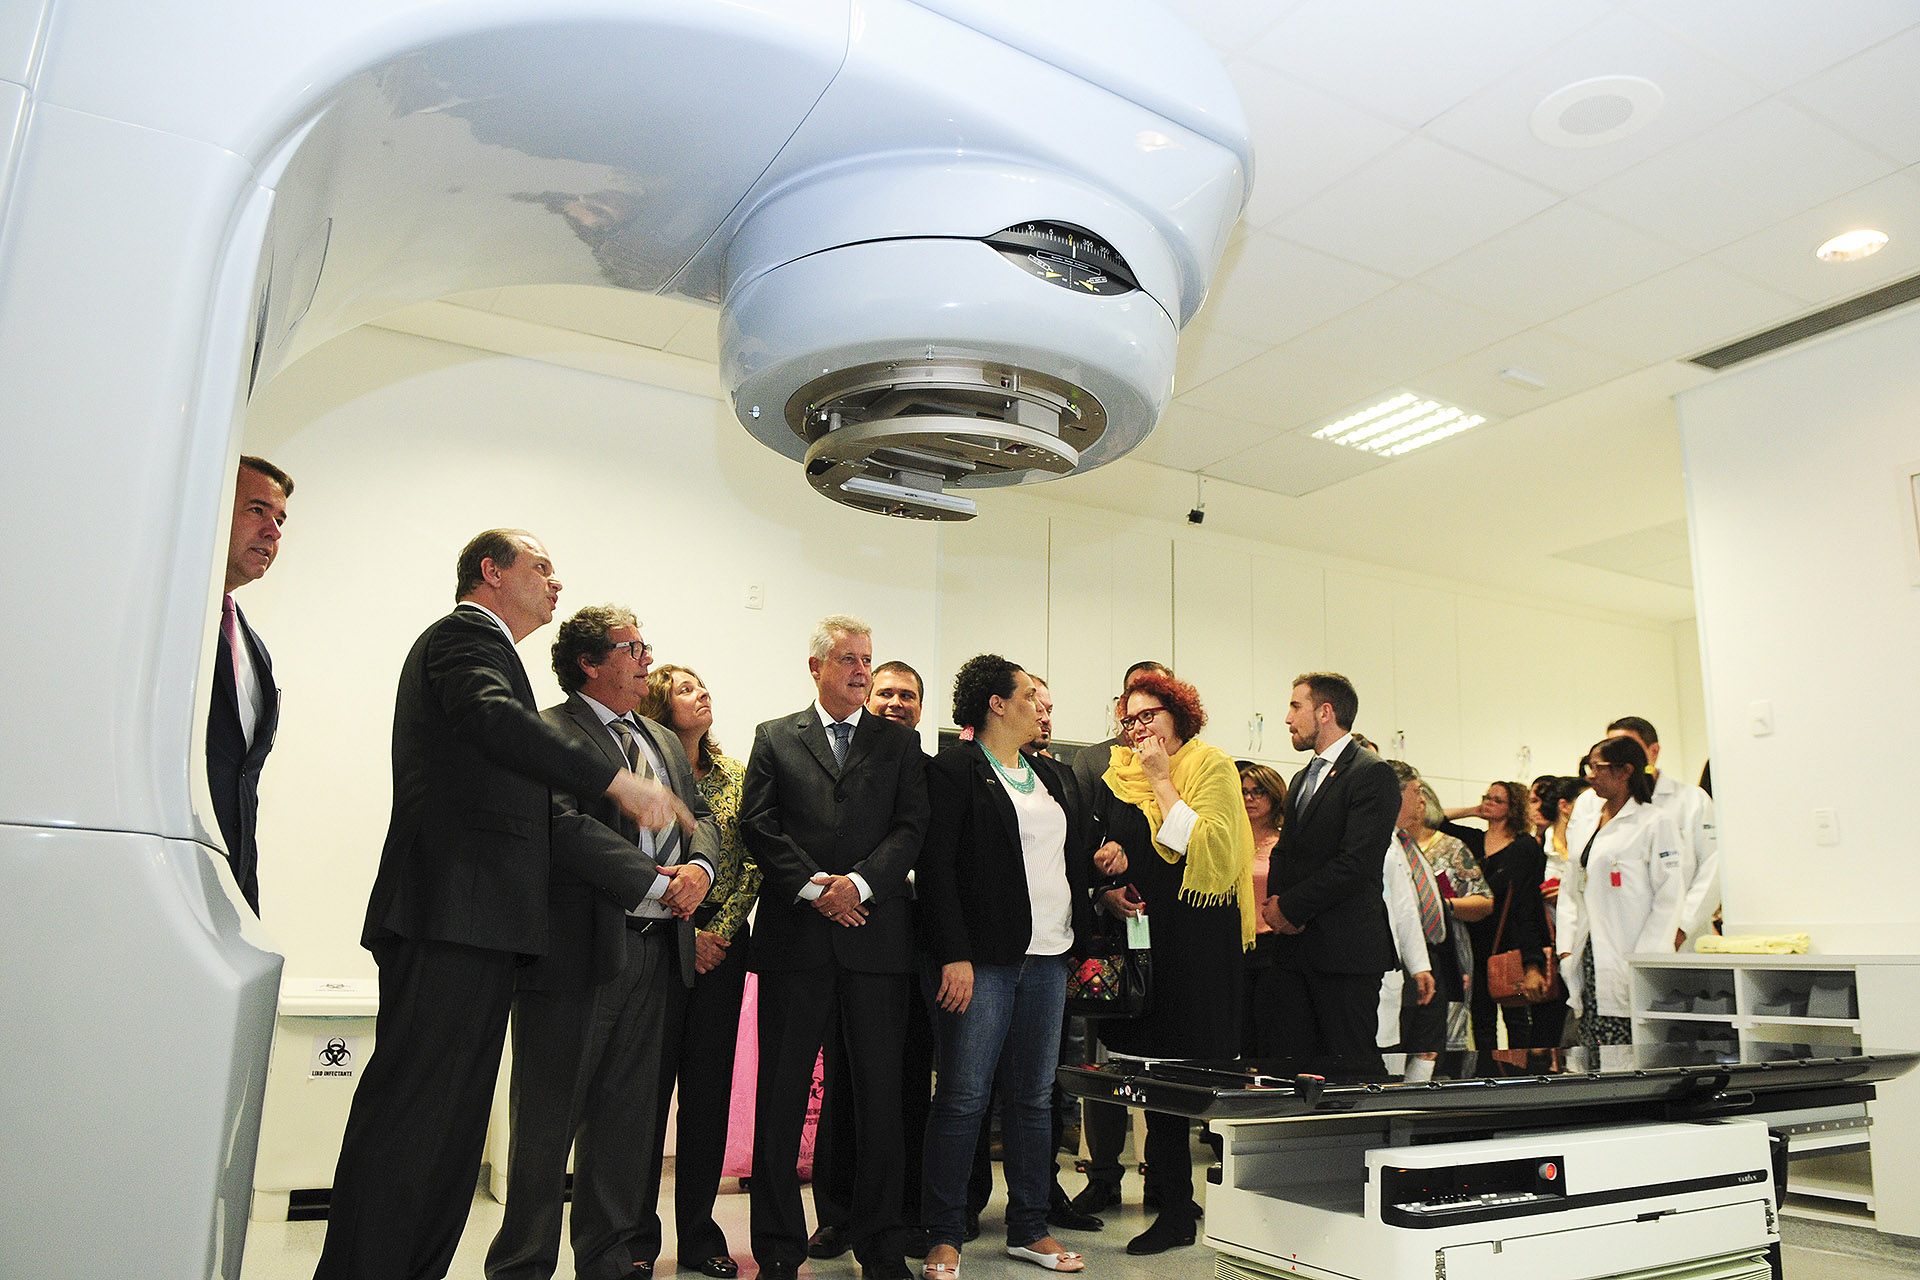 O governador de Brasília, Rodrigo Rollemberg, participou no HUB da cerimônia de entrega do acelerador linear, usado para o tratamento de radioterapia em pacientes com câncer ao lado do ministro da Saúde, Ricardo Barros, e do secretário de Saúde do DF, Humberto Fonseca.